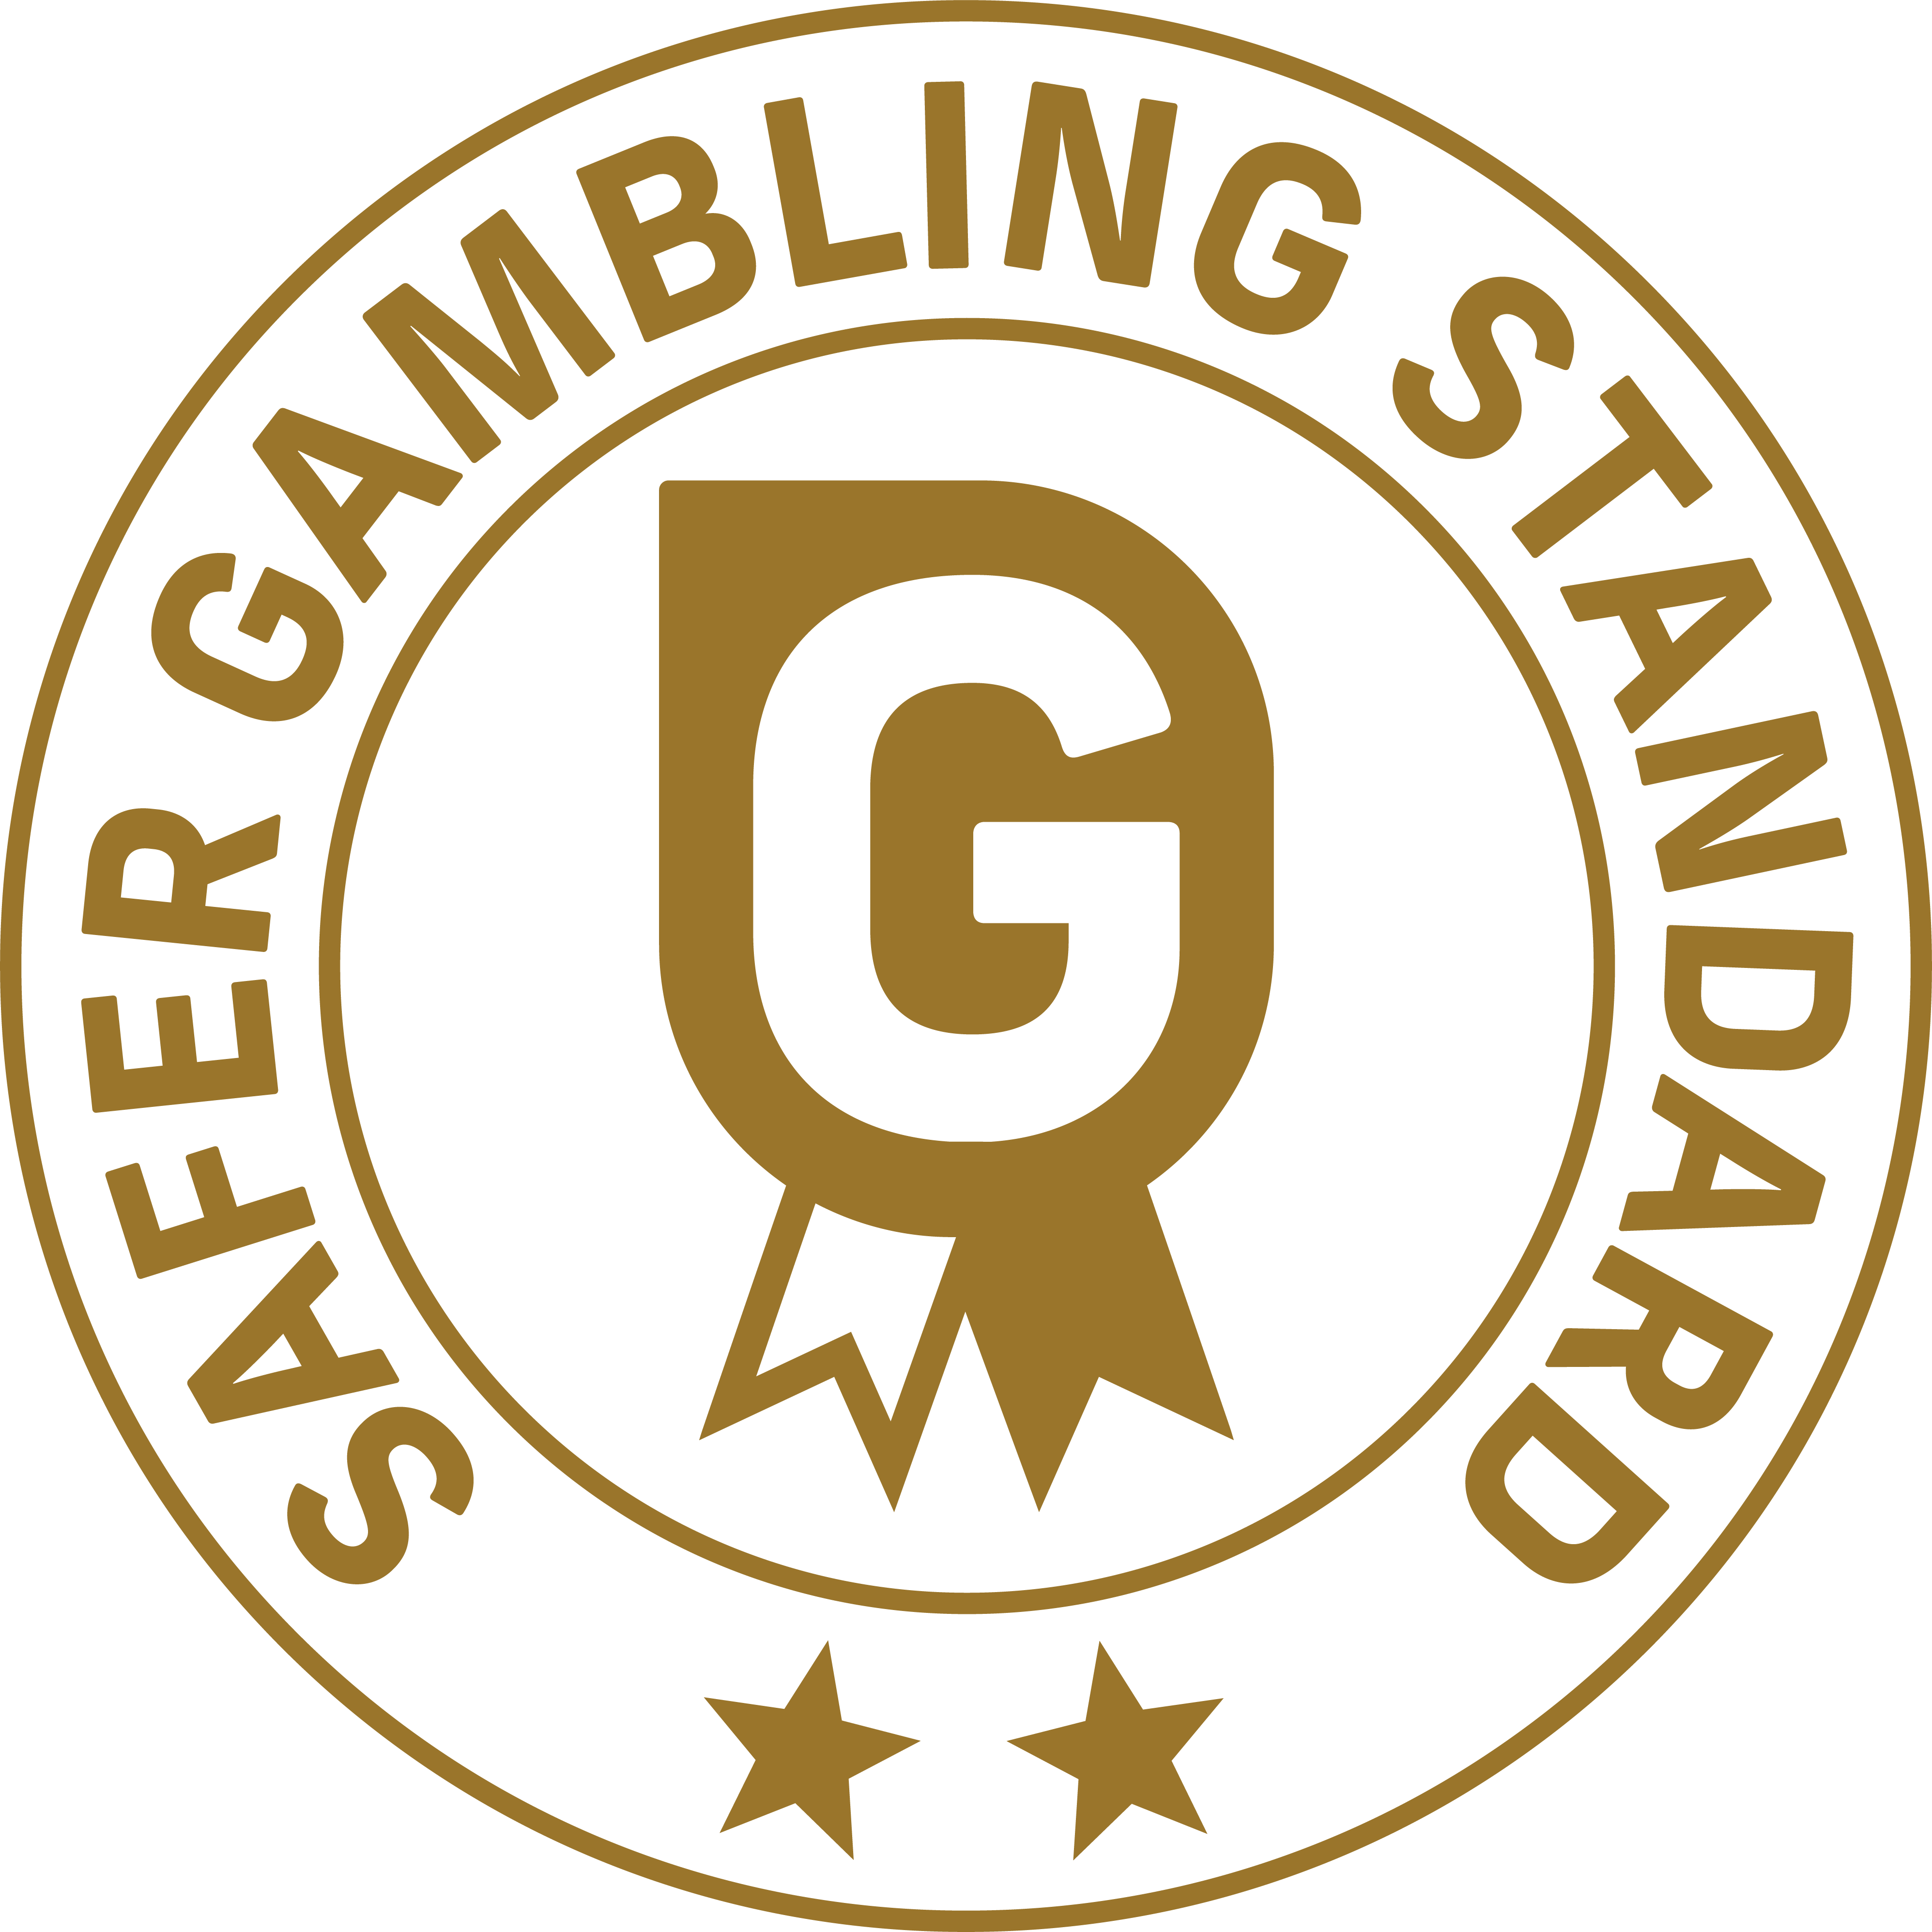 Safer Gambling - 2 Star Gold